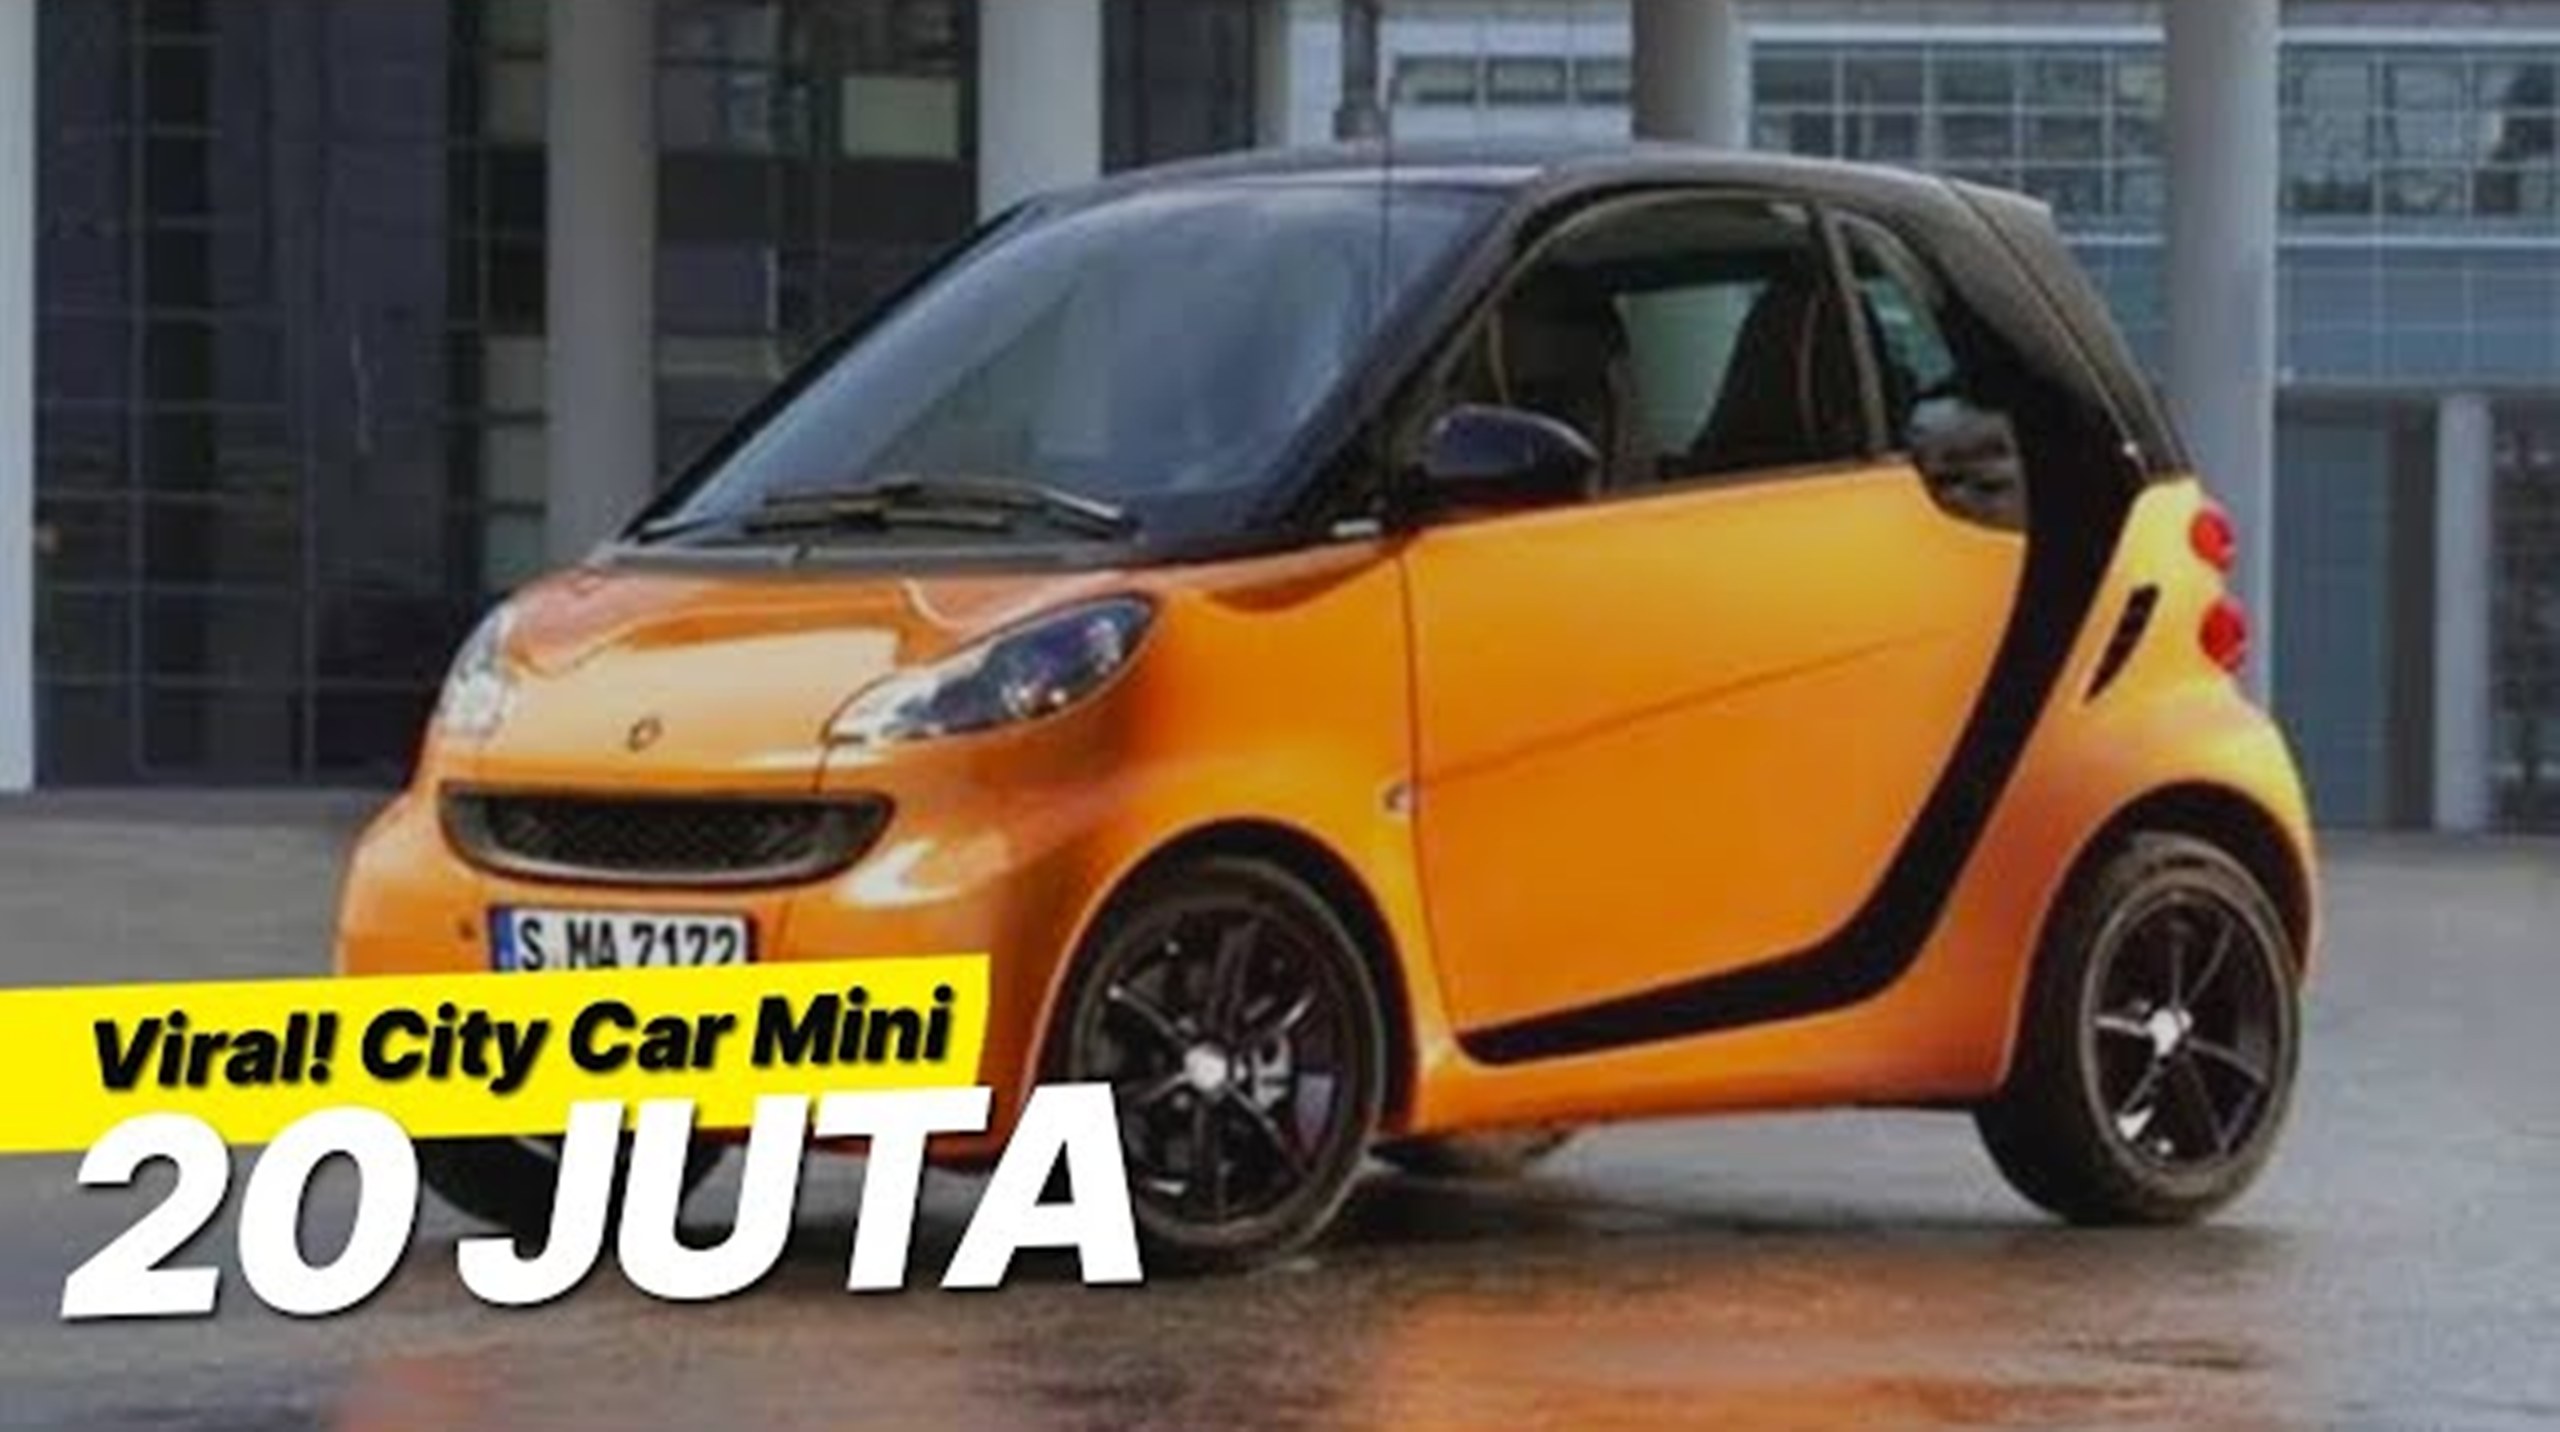 Heboh! City Car Mini yang Elegan Harganya 20 Jutaan, Cocok Buat Emak-Emak ke Mall, Wajib Pinang Guys